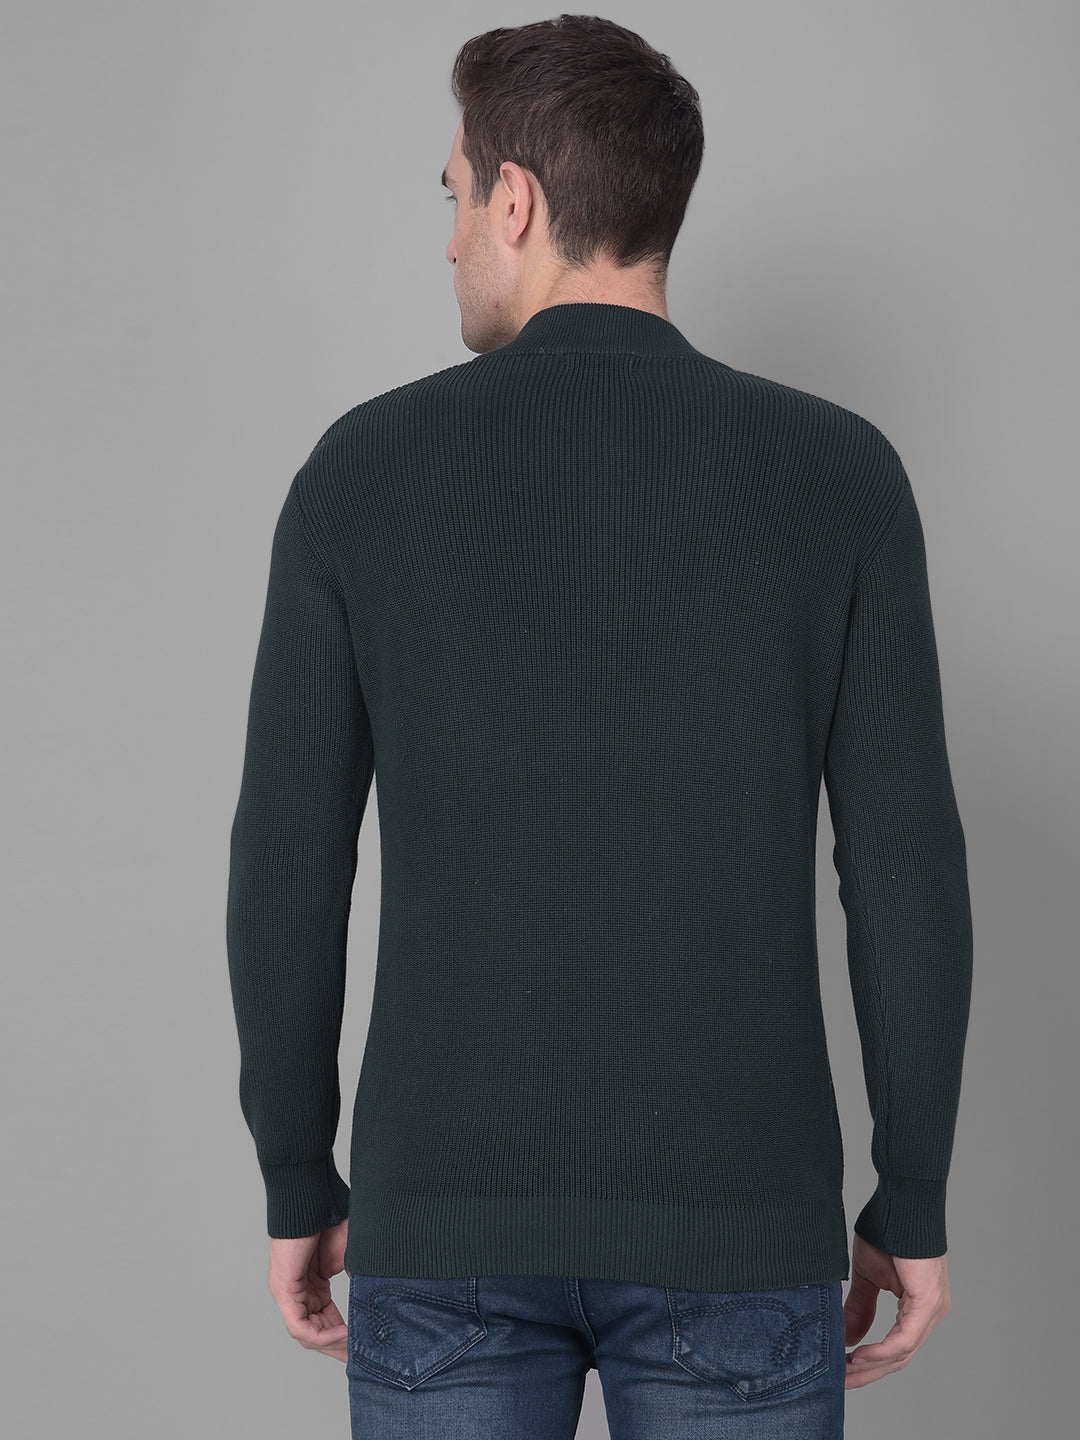 cobb solid dark green high neck zipper sweater